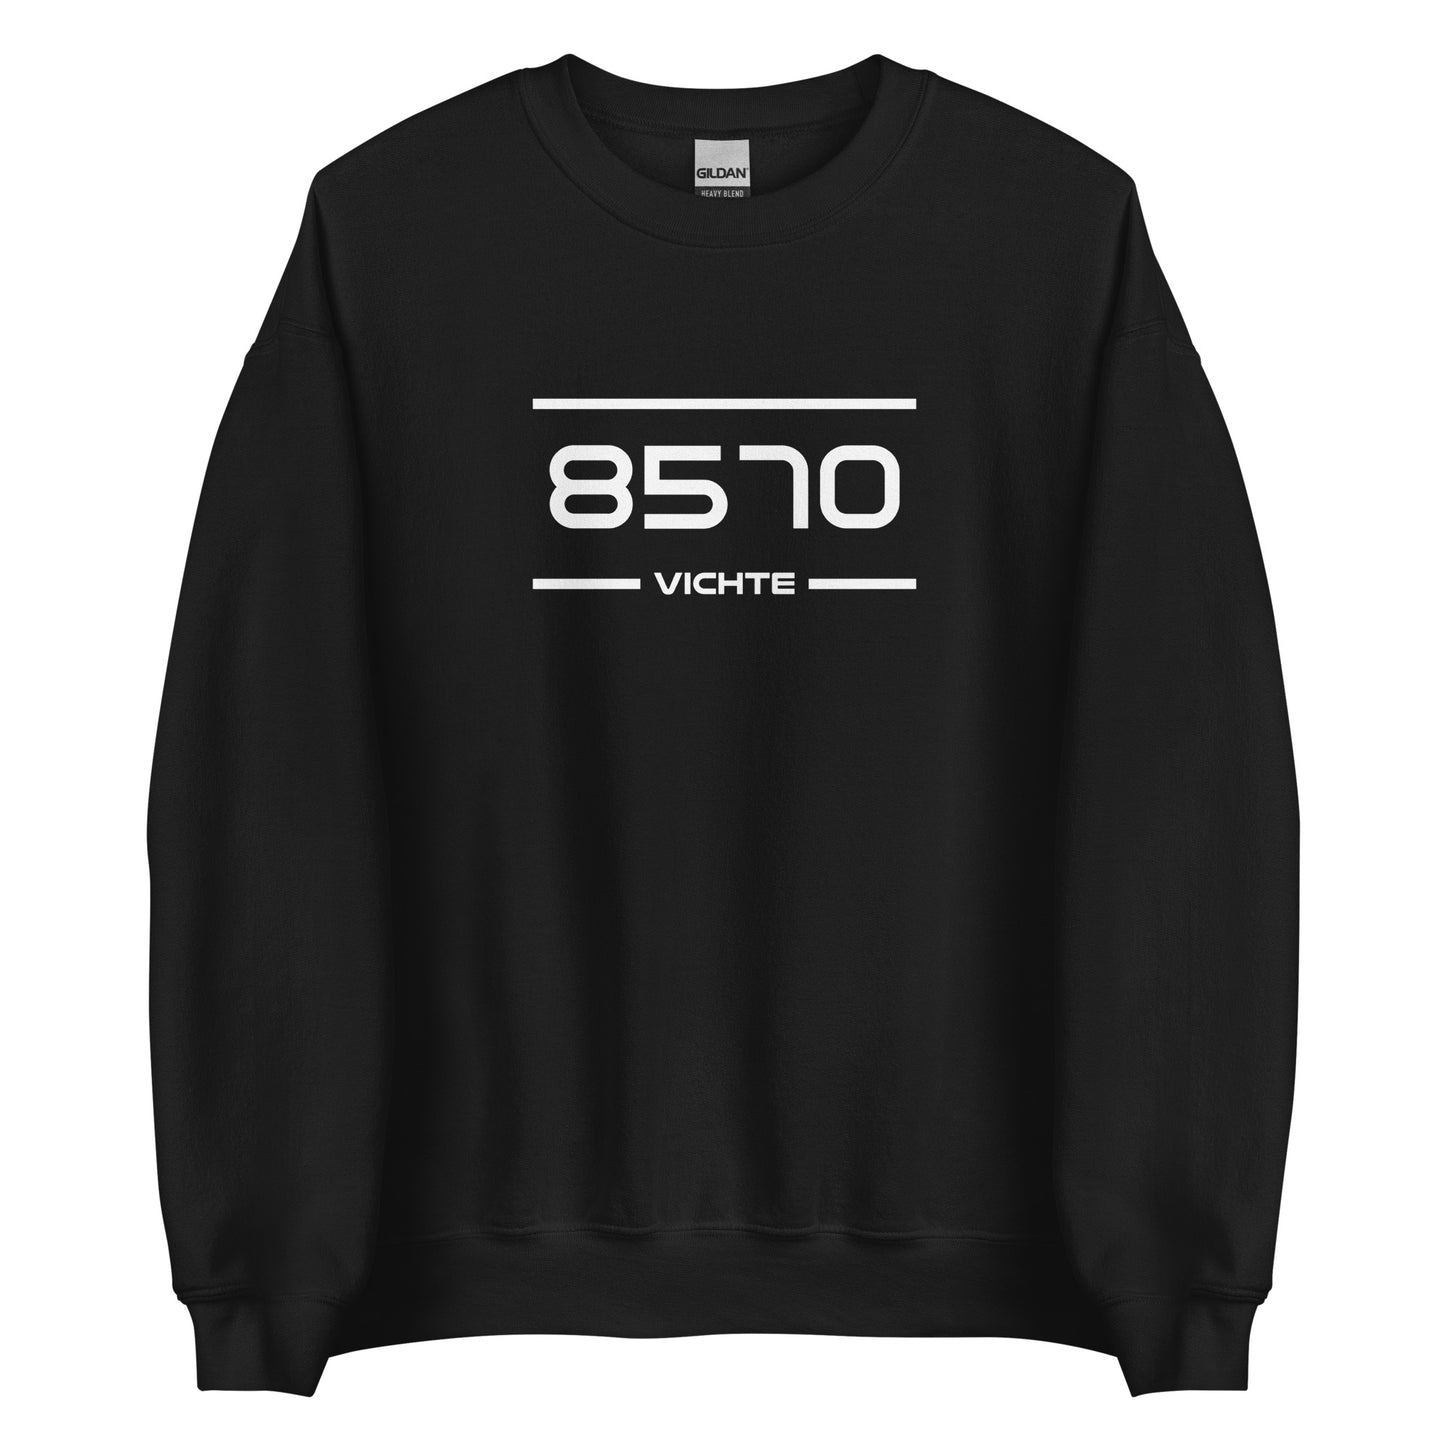 Sweater - 8570 - Vichte (M/V)